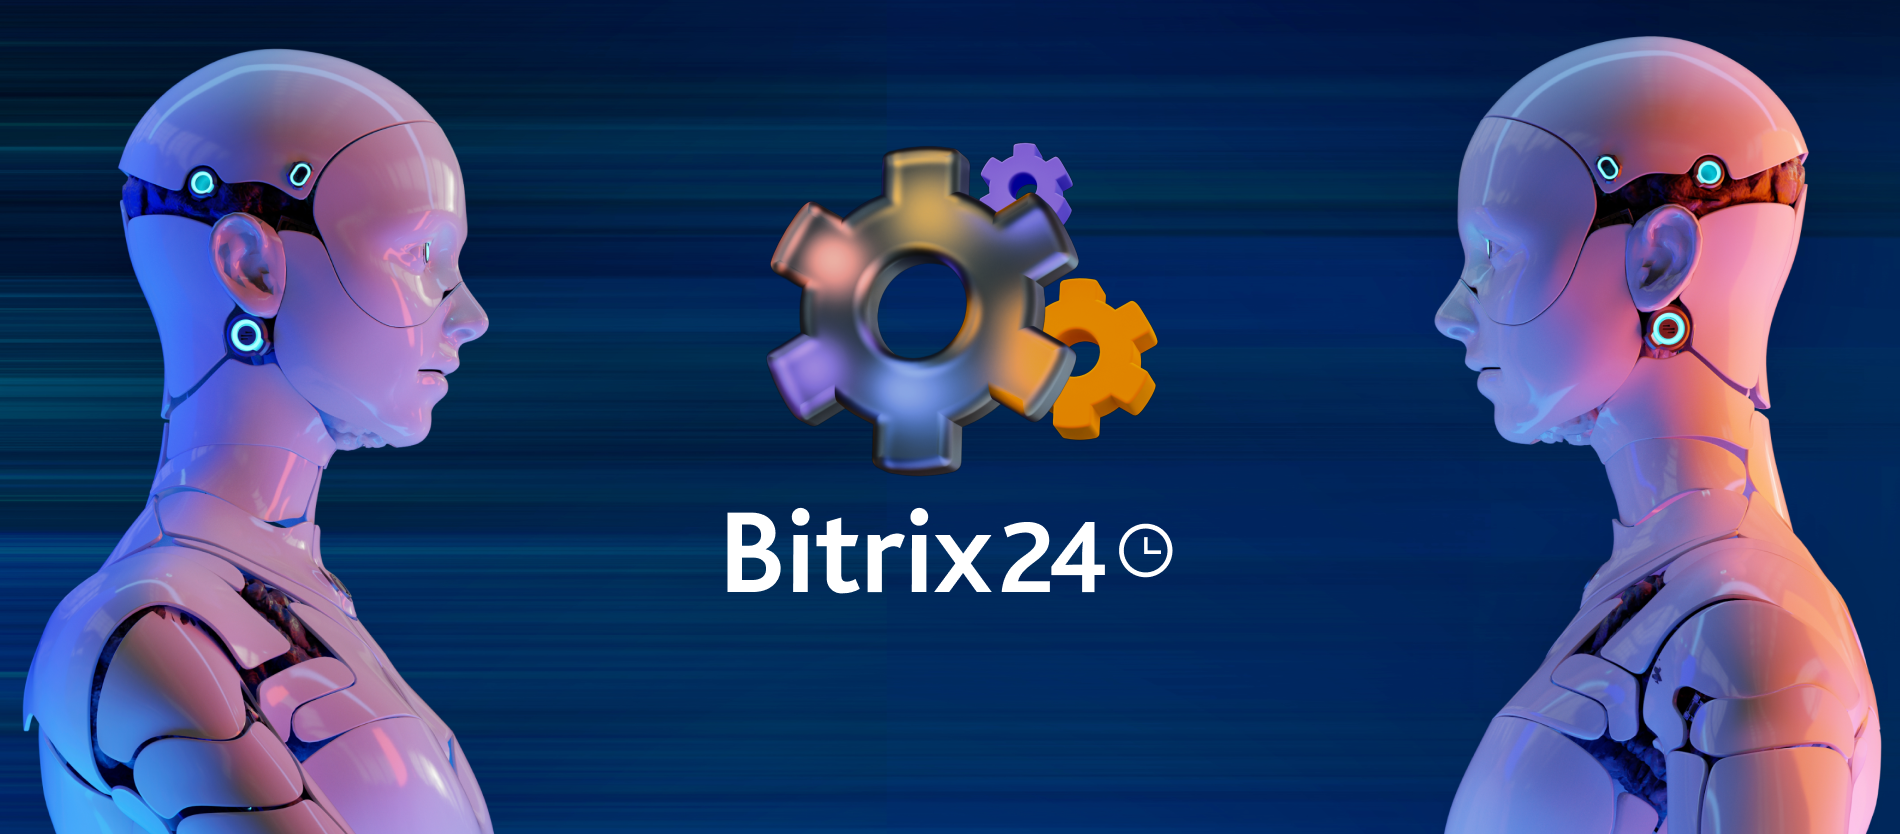 Yönetmek İçin Otomatikleştirin: Bitrix24 Otomasyon Kurallarını Keşfedin